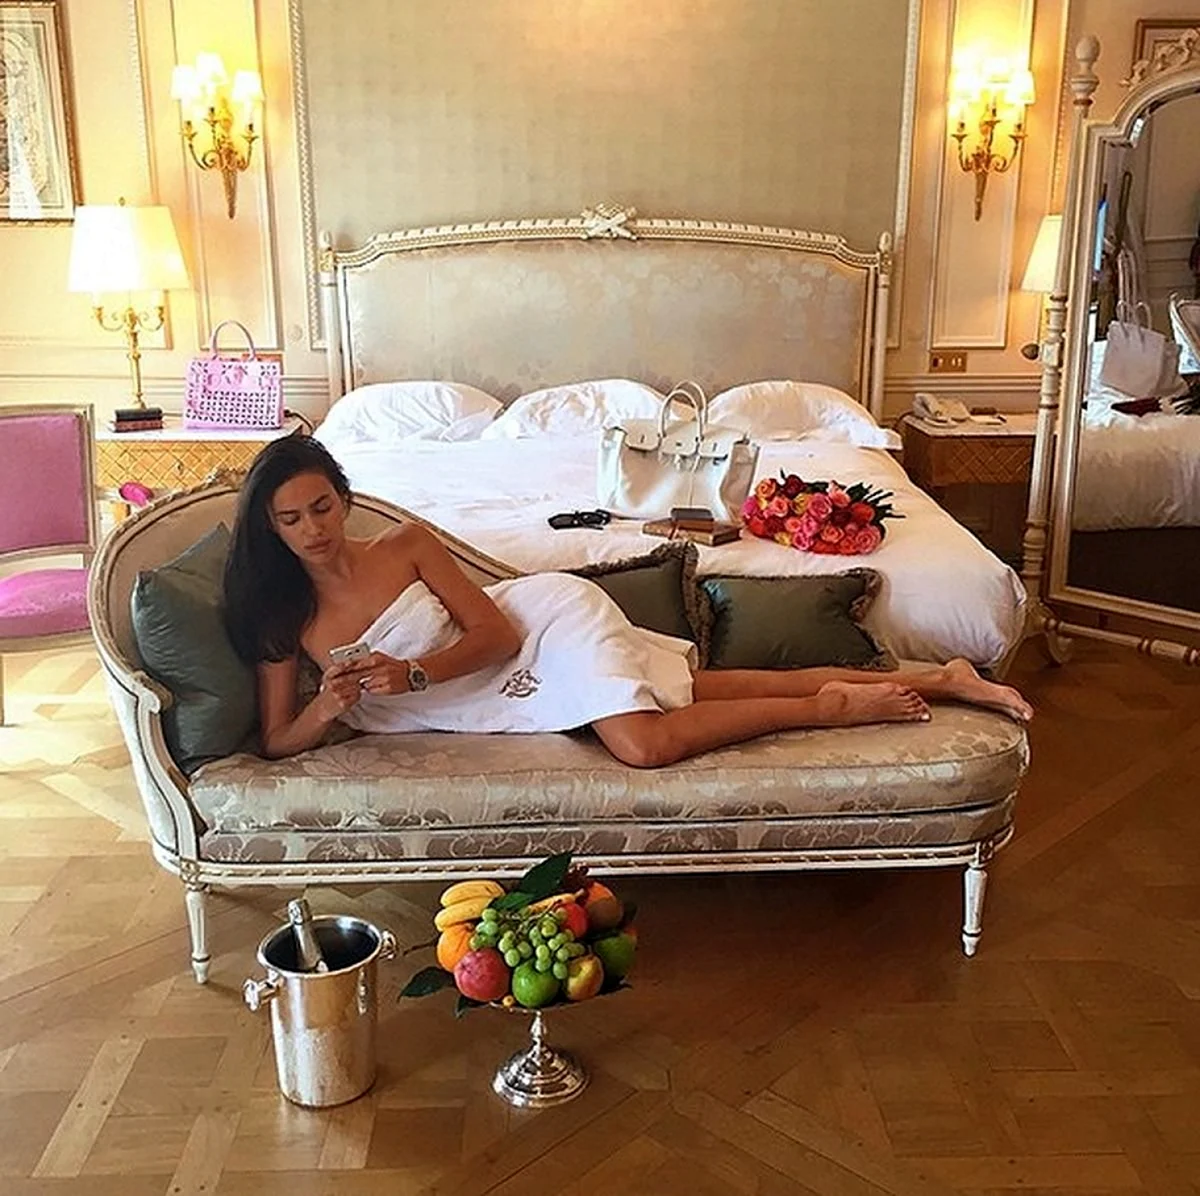 Luxury girl Ирина Шейк